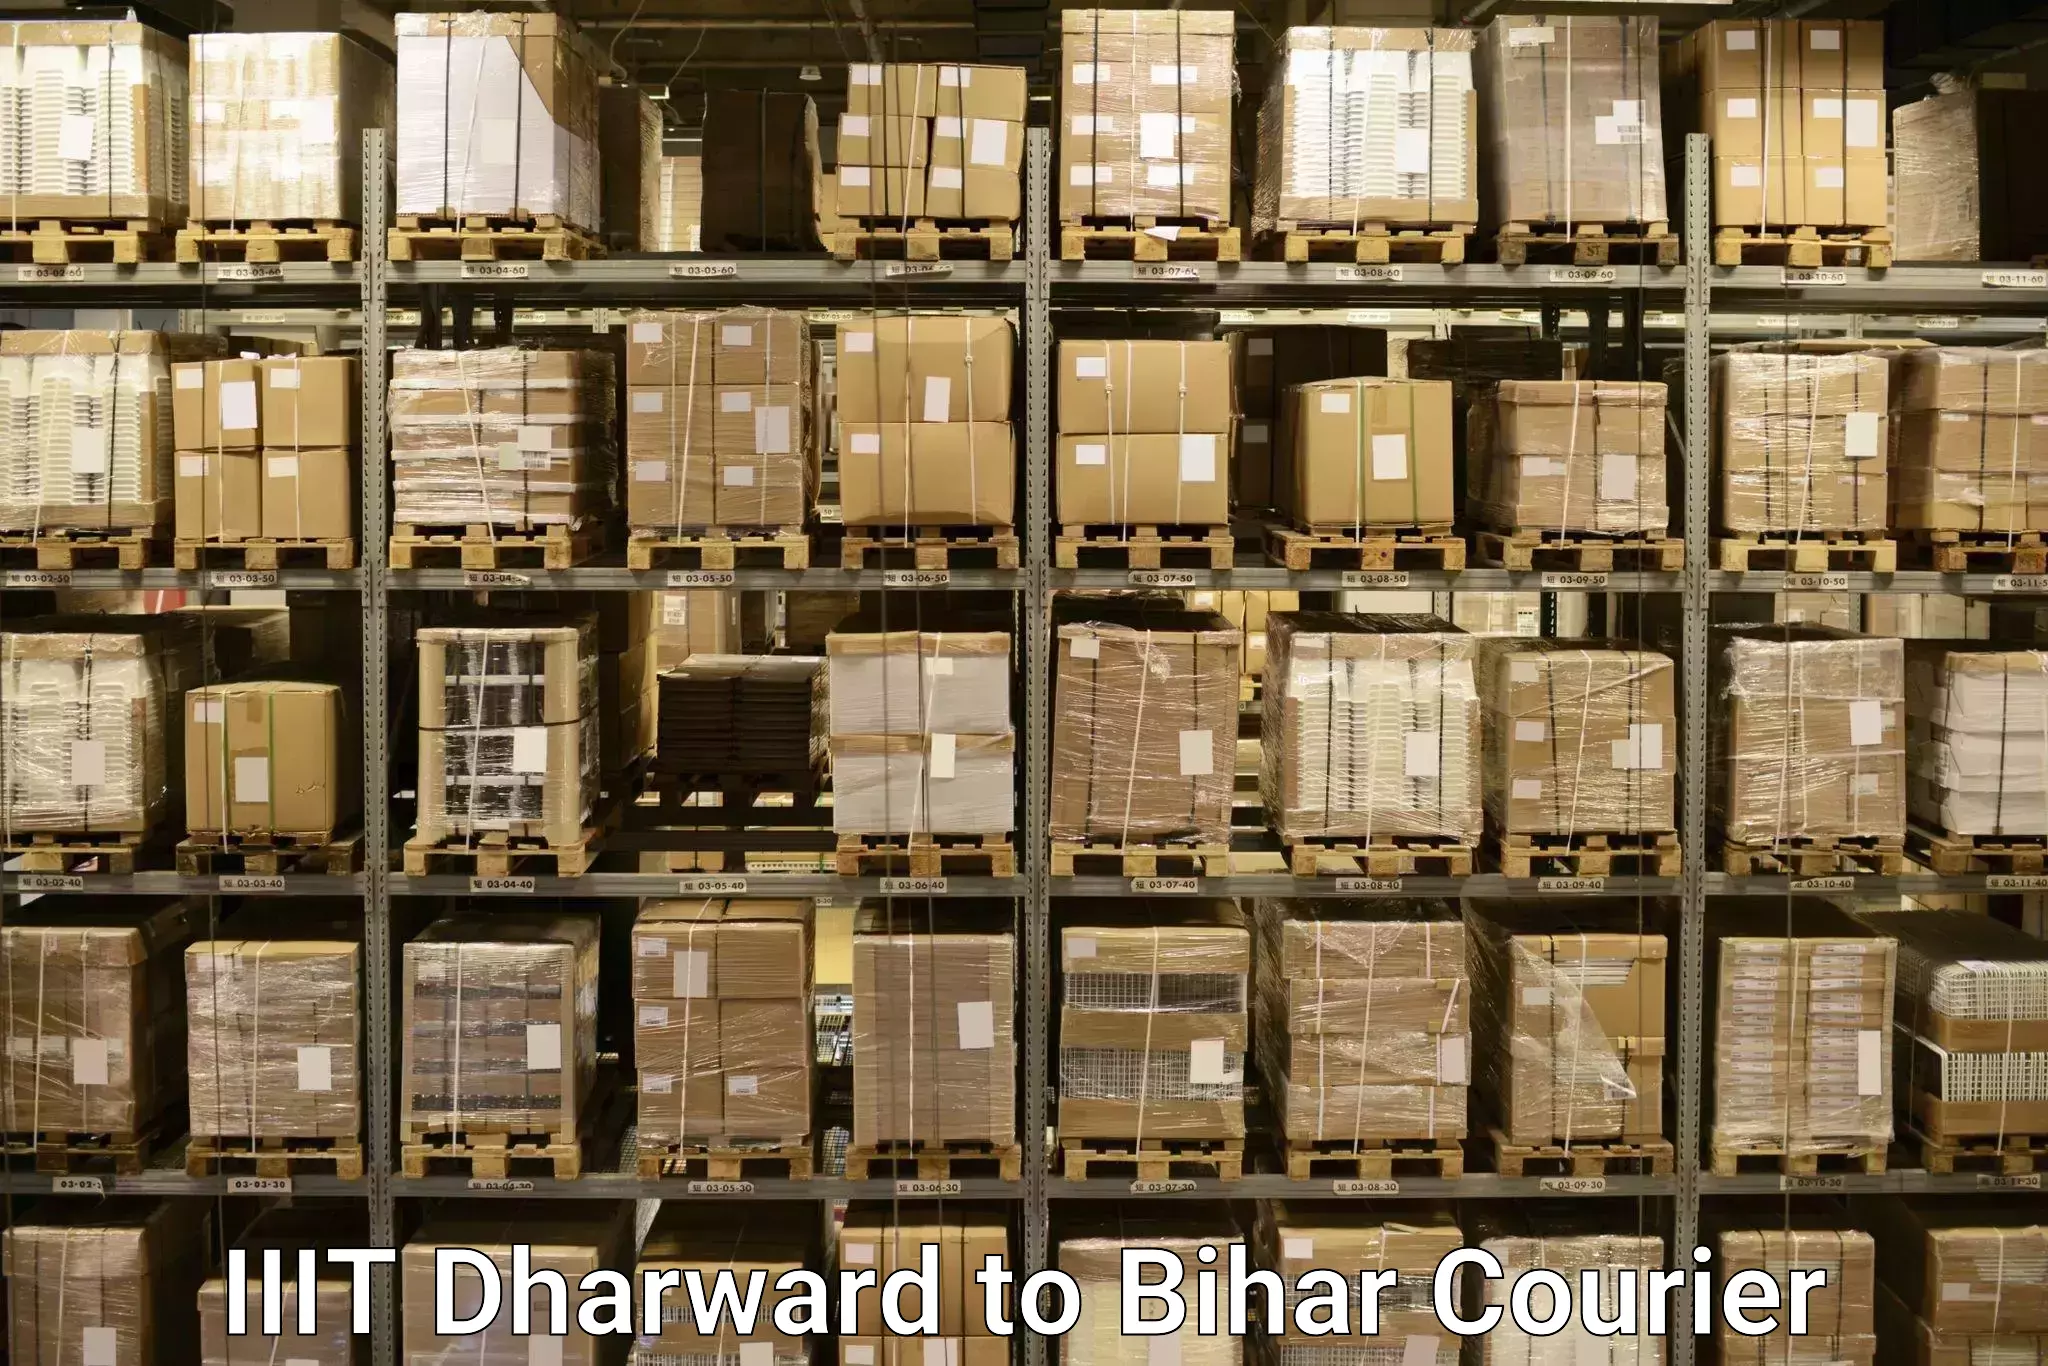 Baggage courier service IIIT Dharward to Bharwara